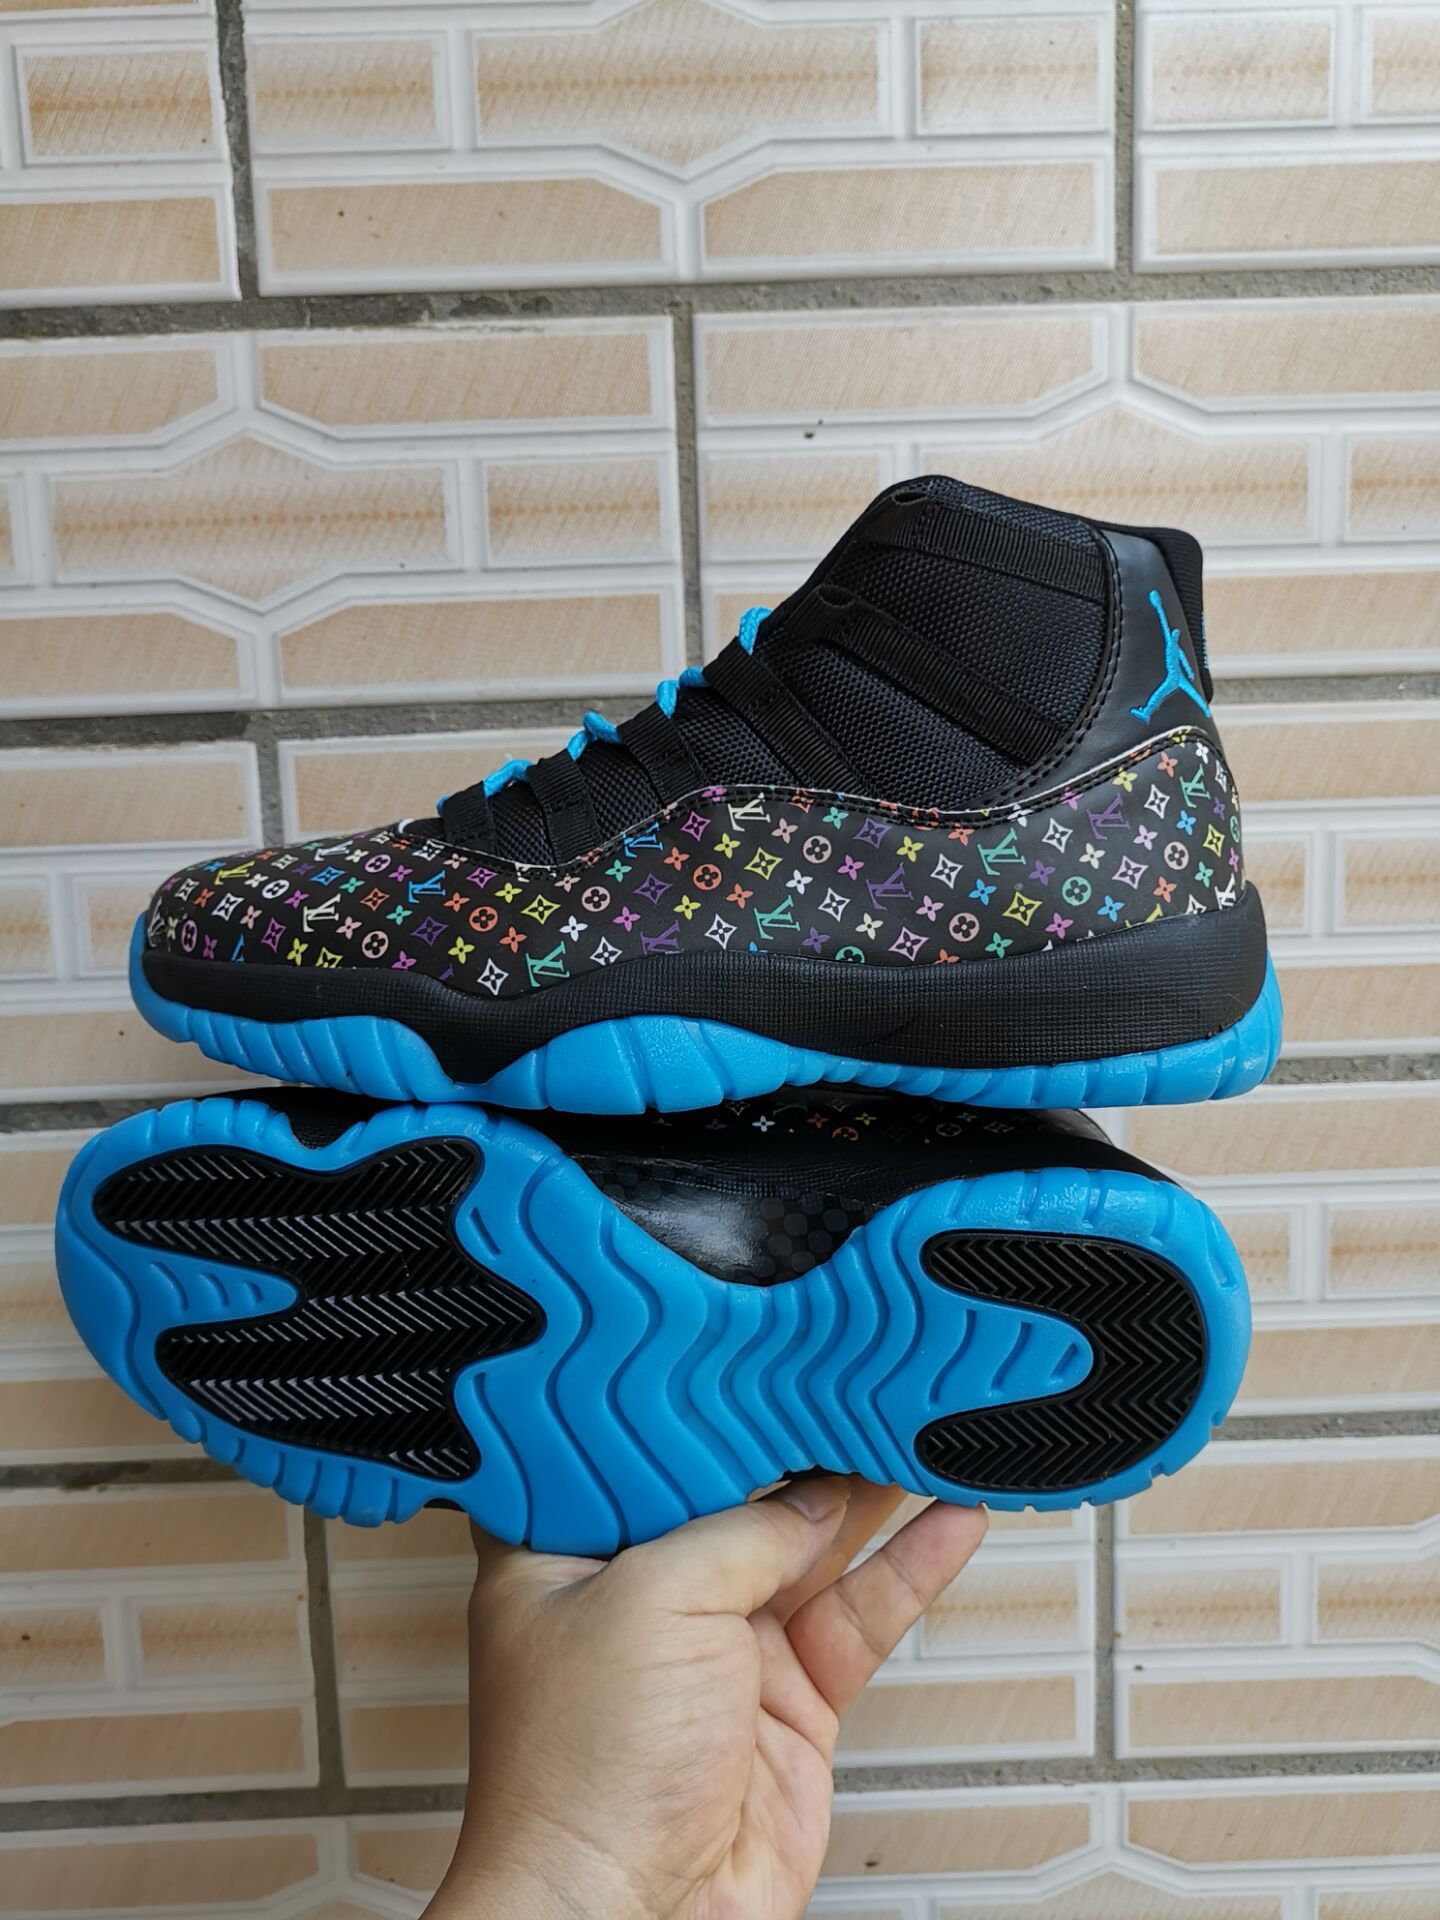 2019 Air Jordan 11 Retro Black Jade Colorful Shoes